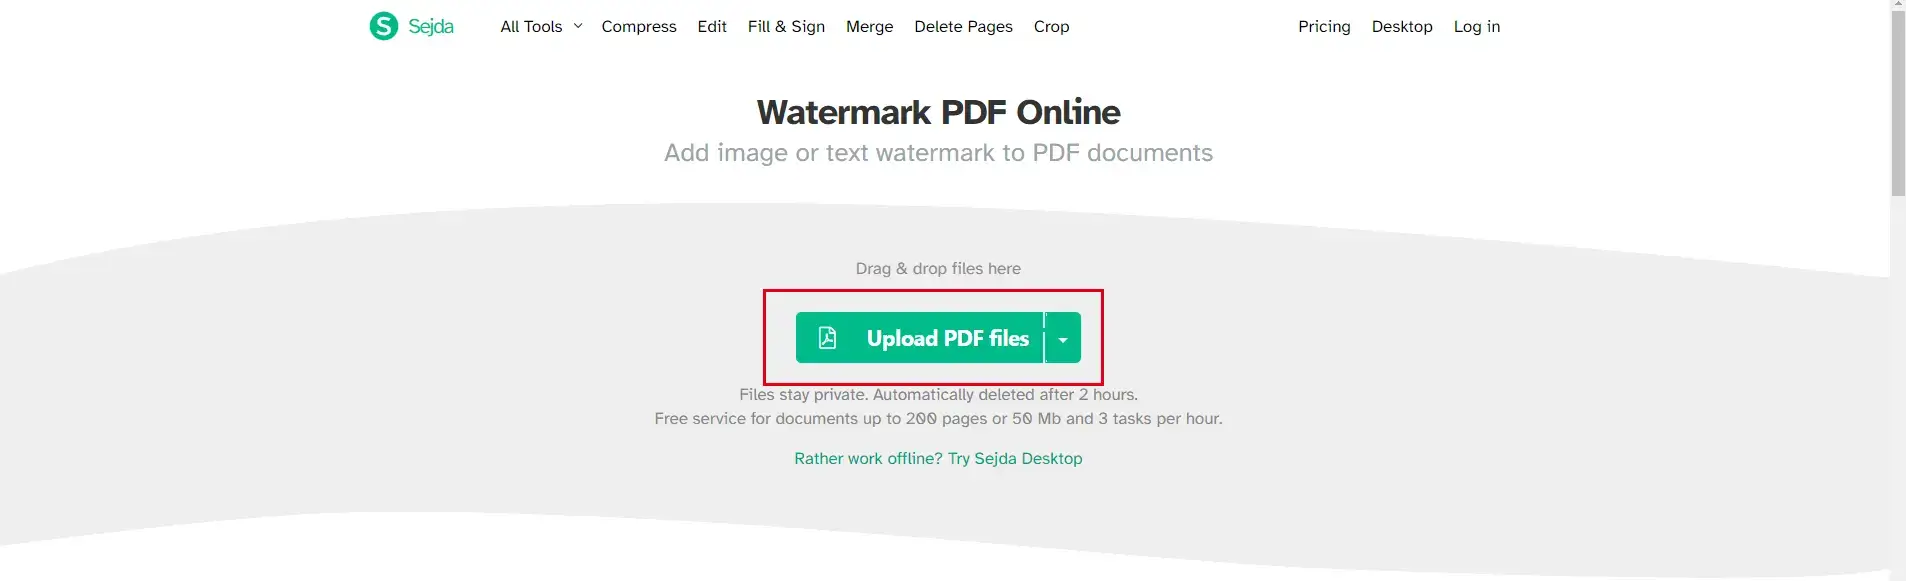 sedja pdf watermark add files